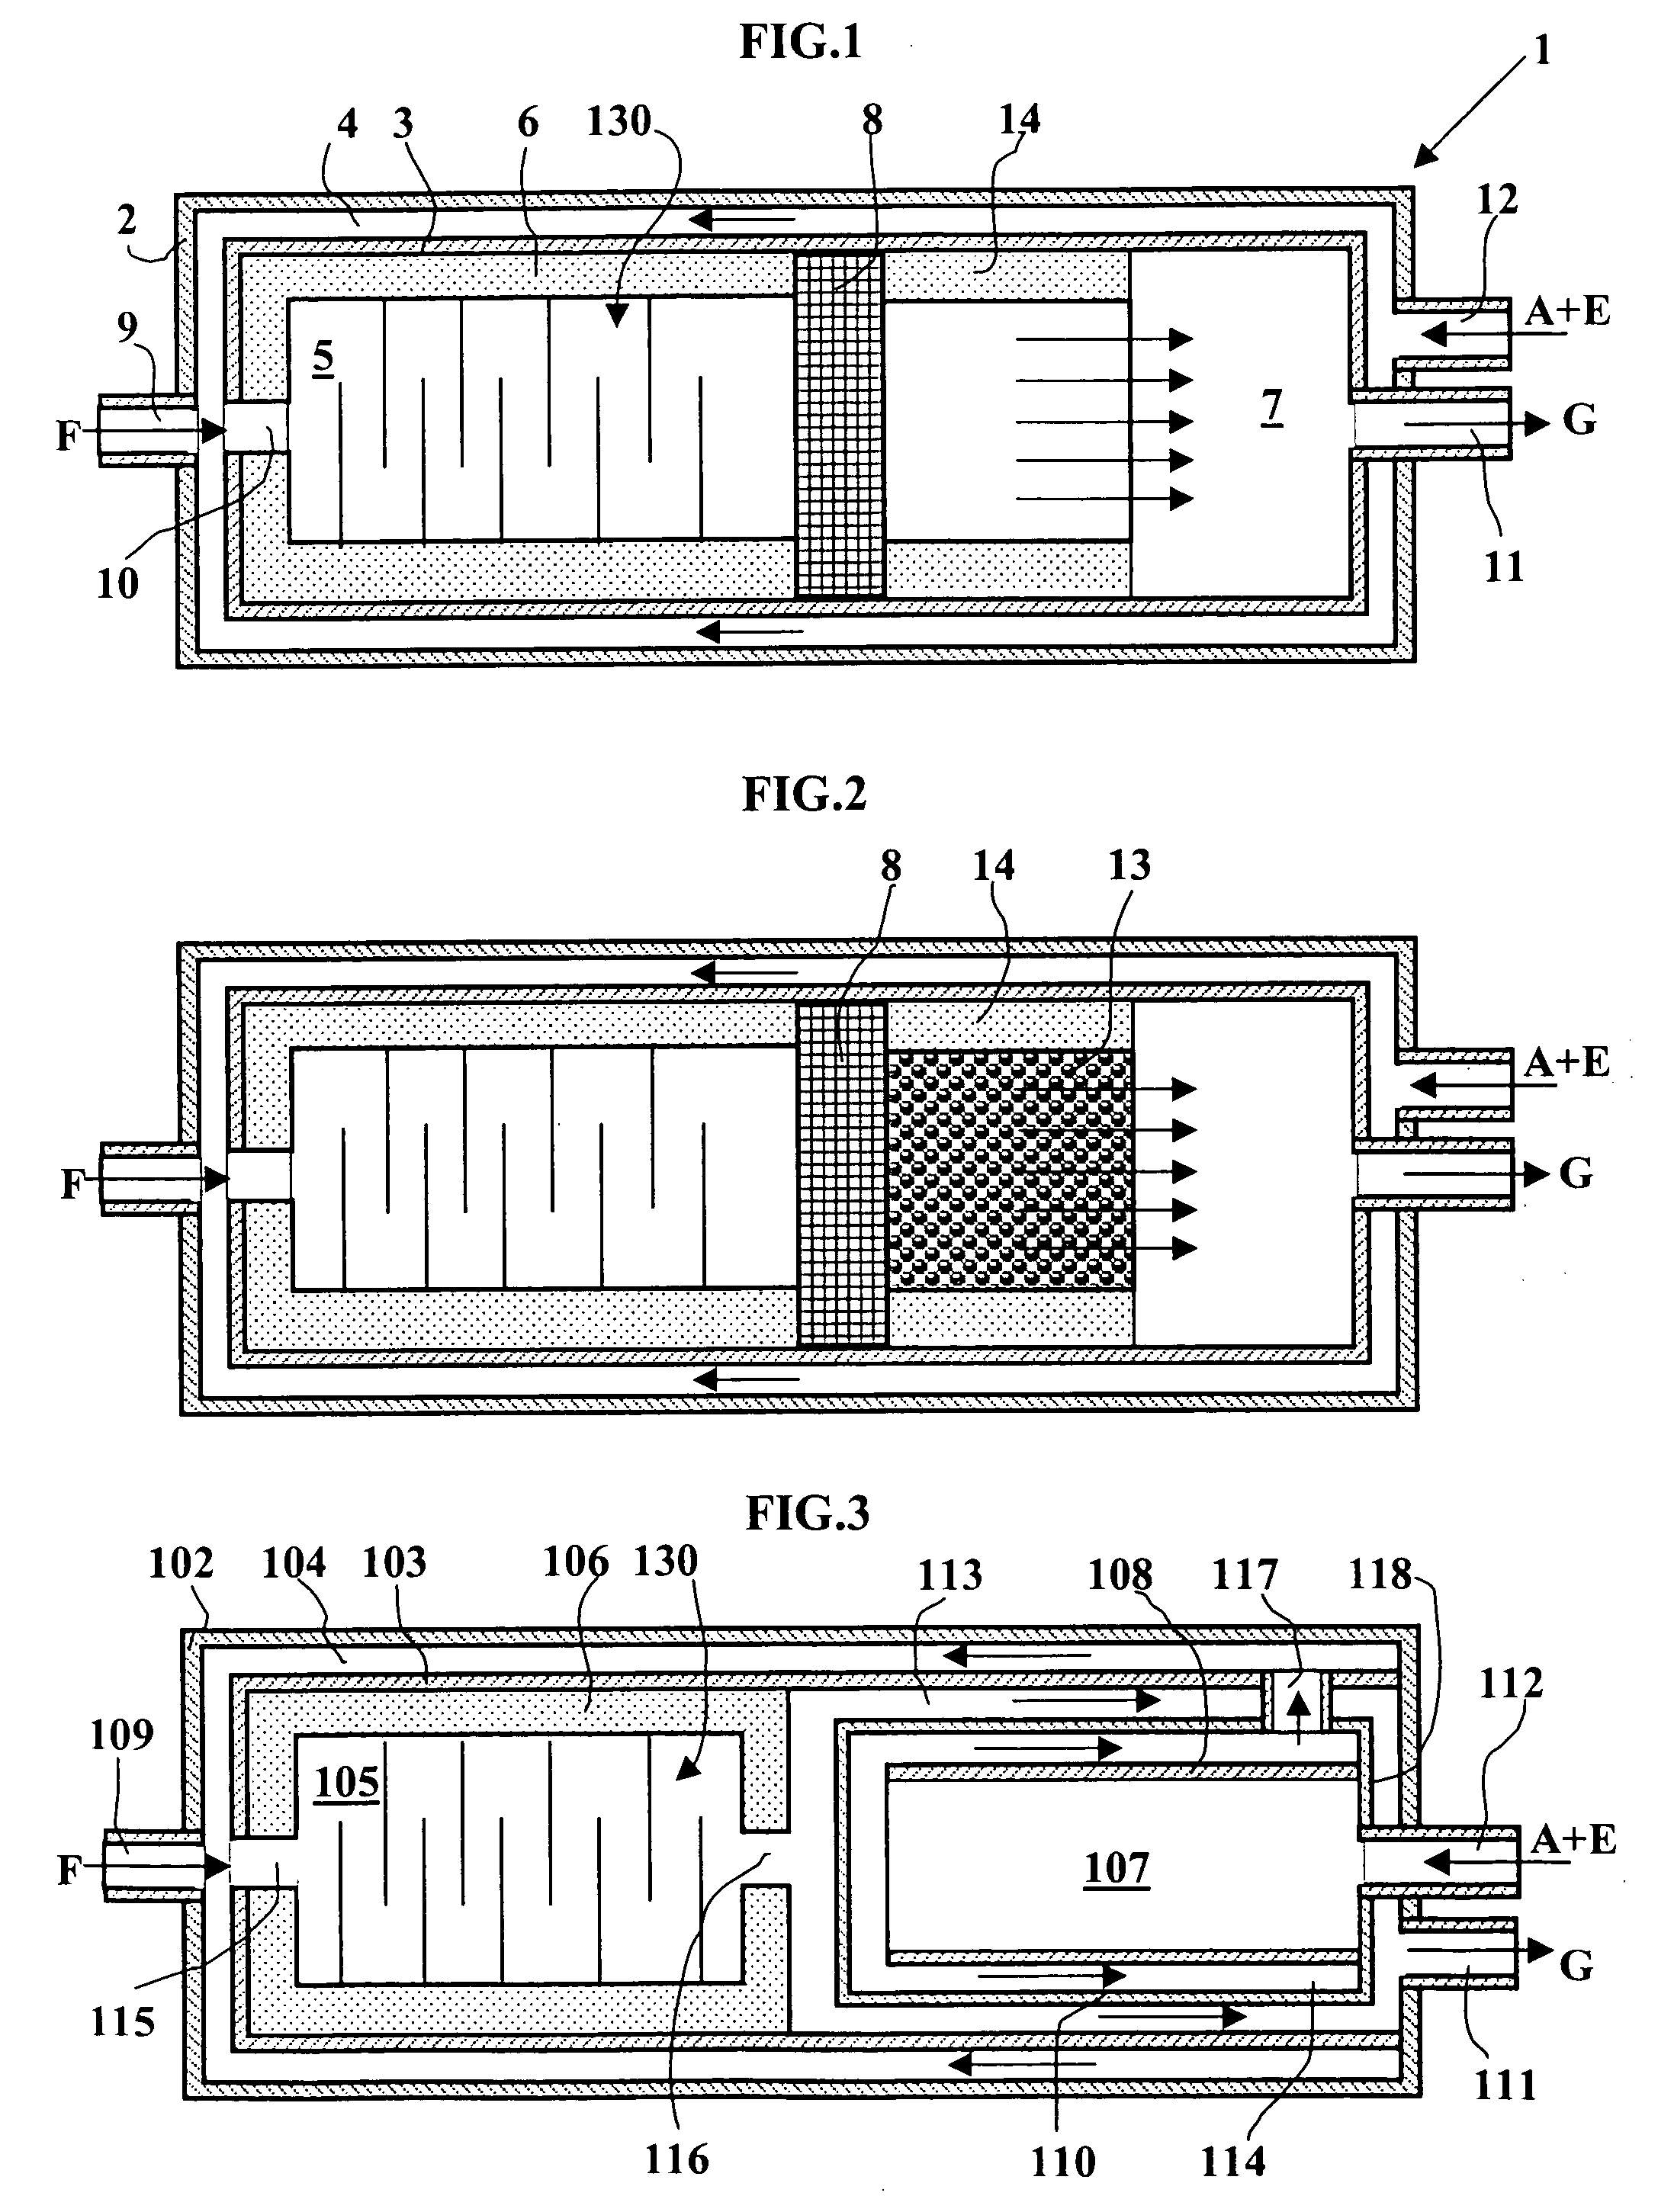 Partial oxidation reactor